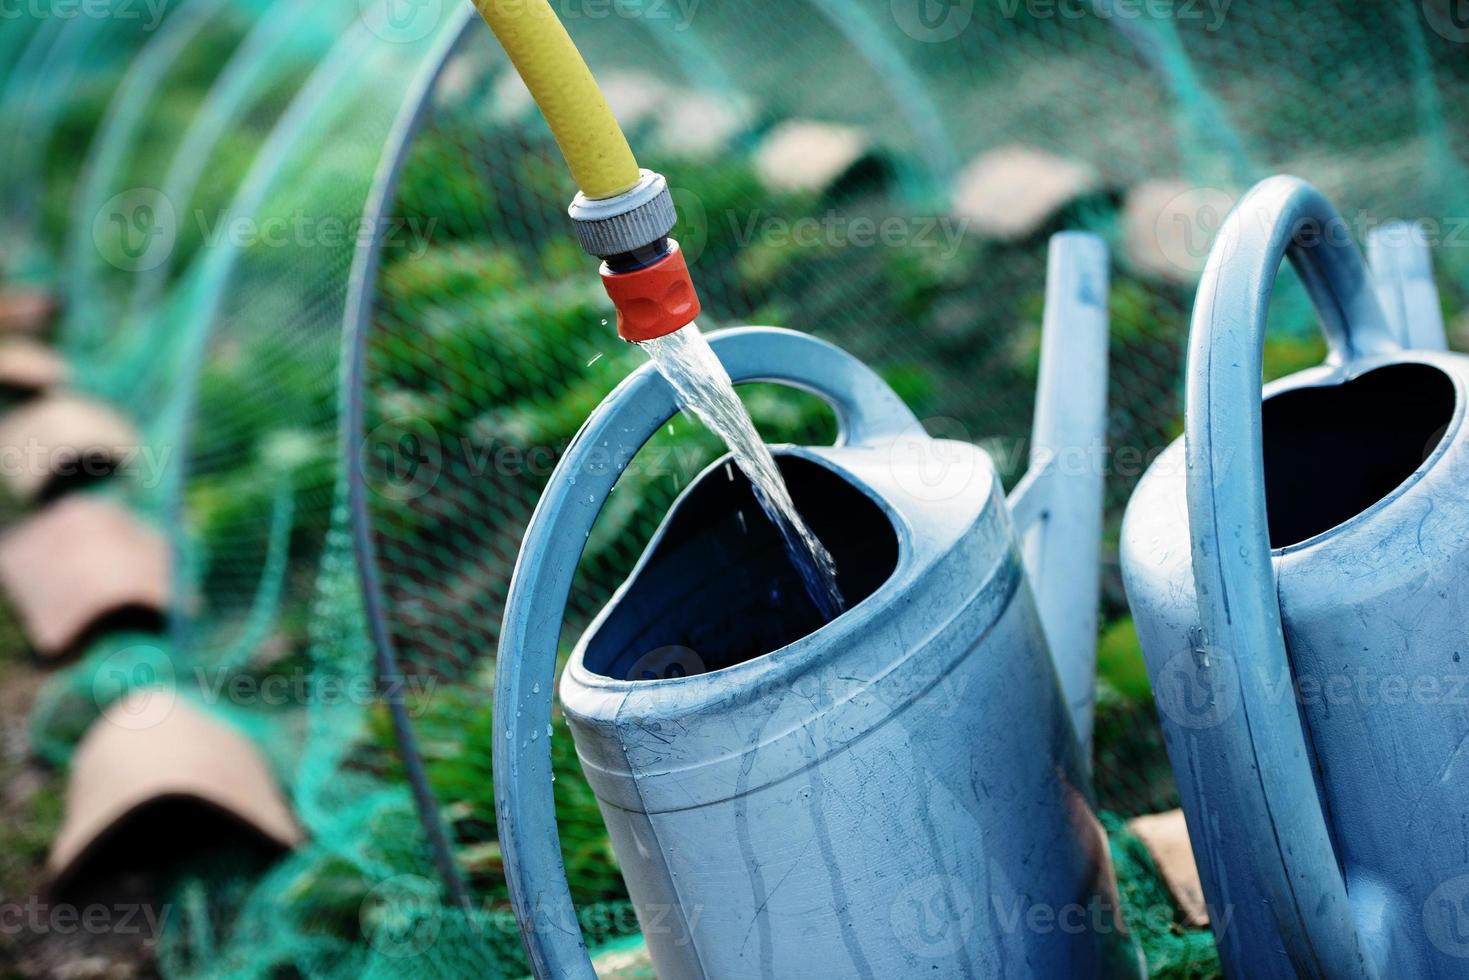 jardinage, remplir arrosoir d'eau pour arroser les plantes photo